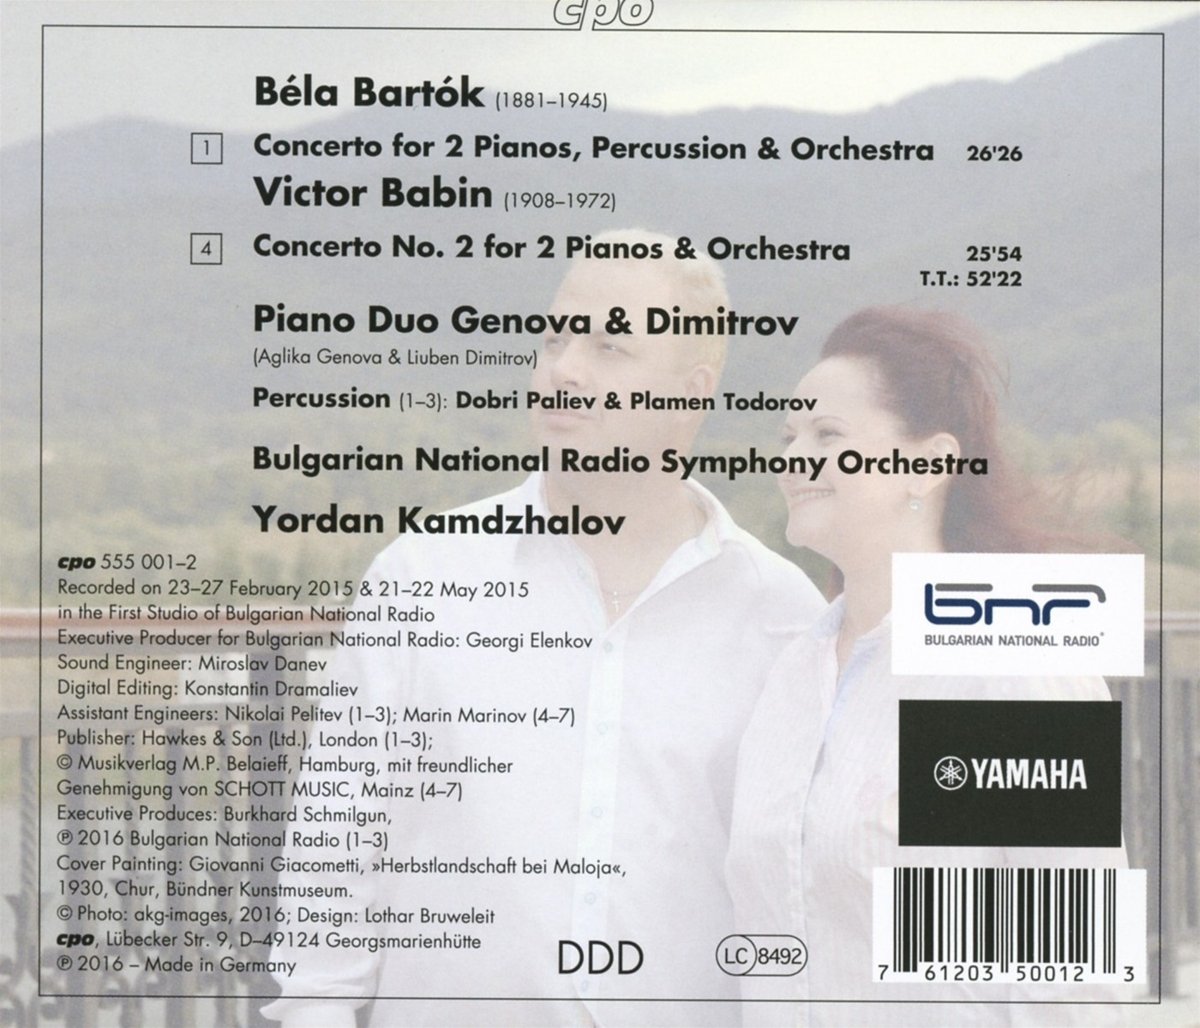 Bartok & Babin: Concertos for 2 Pianos & Orchestra - slide-1